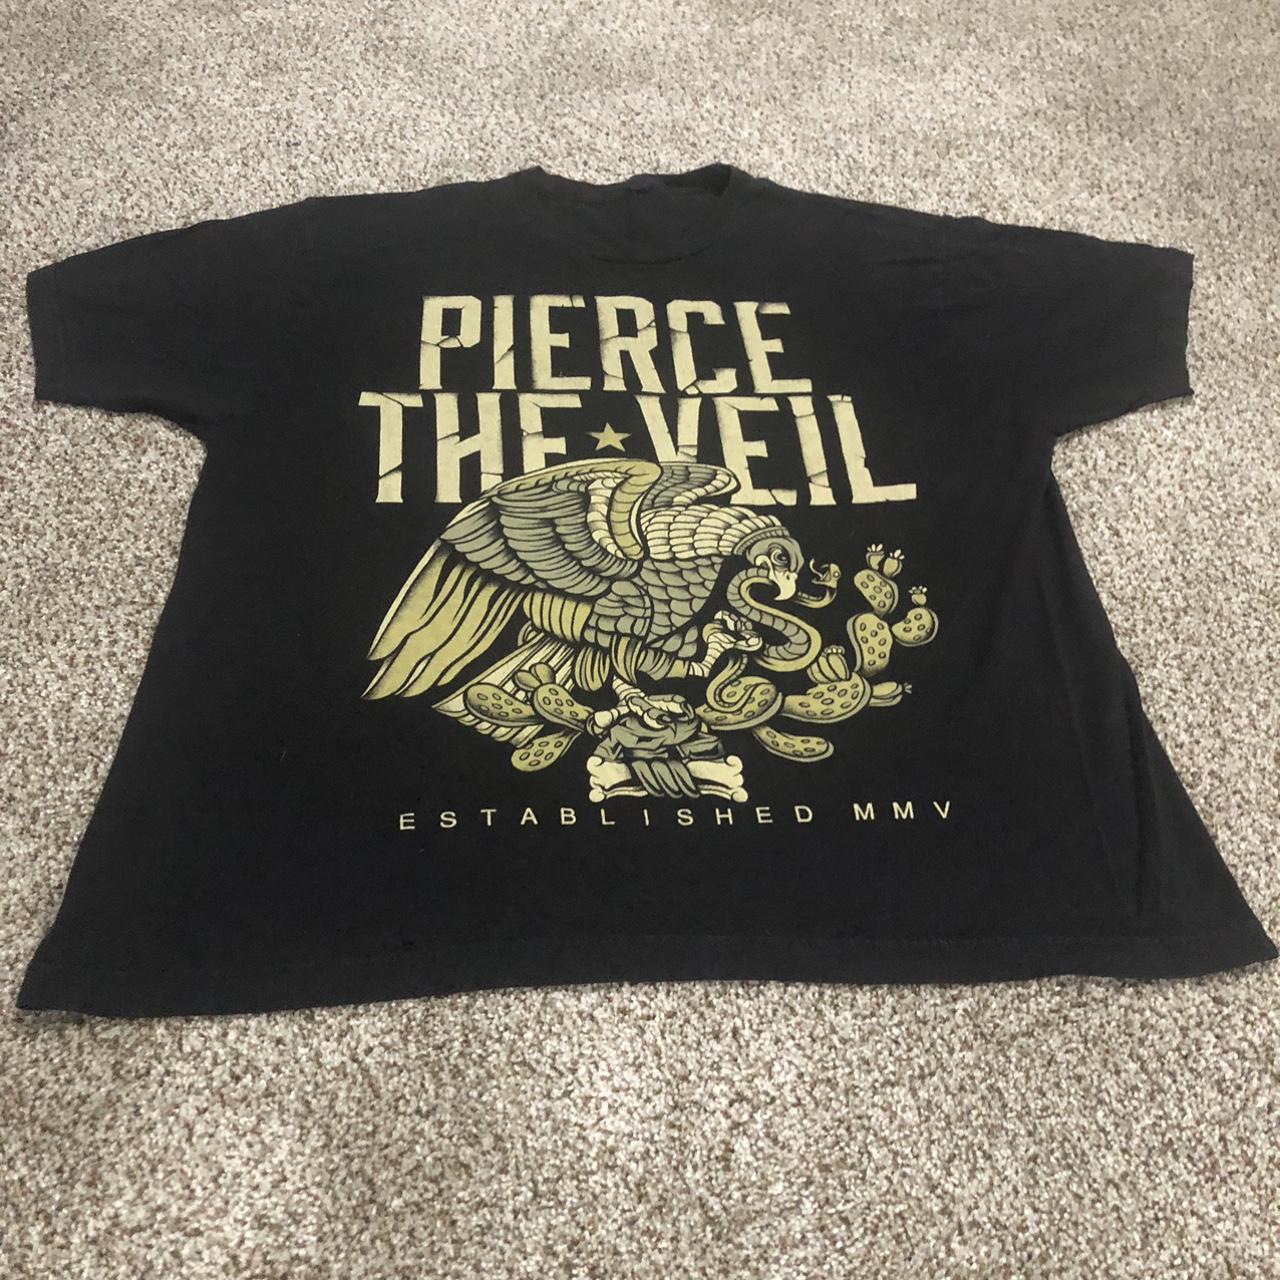 Pierce the-veil - Depop